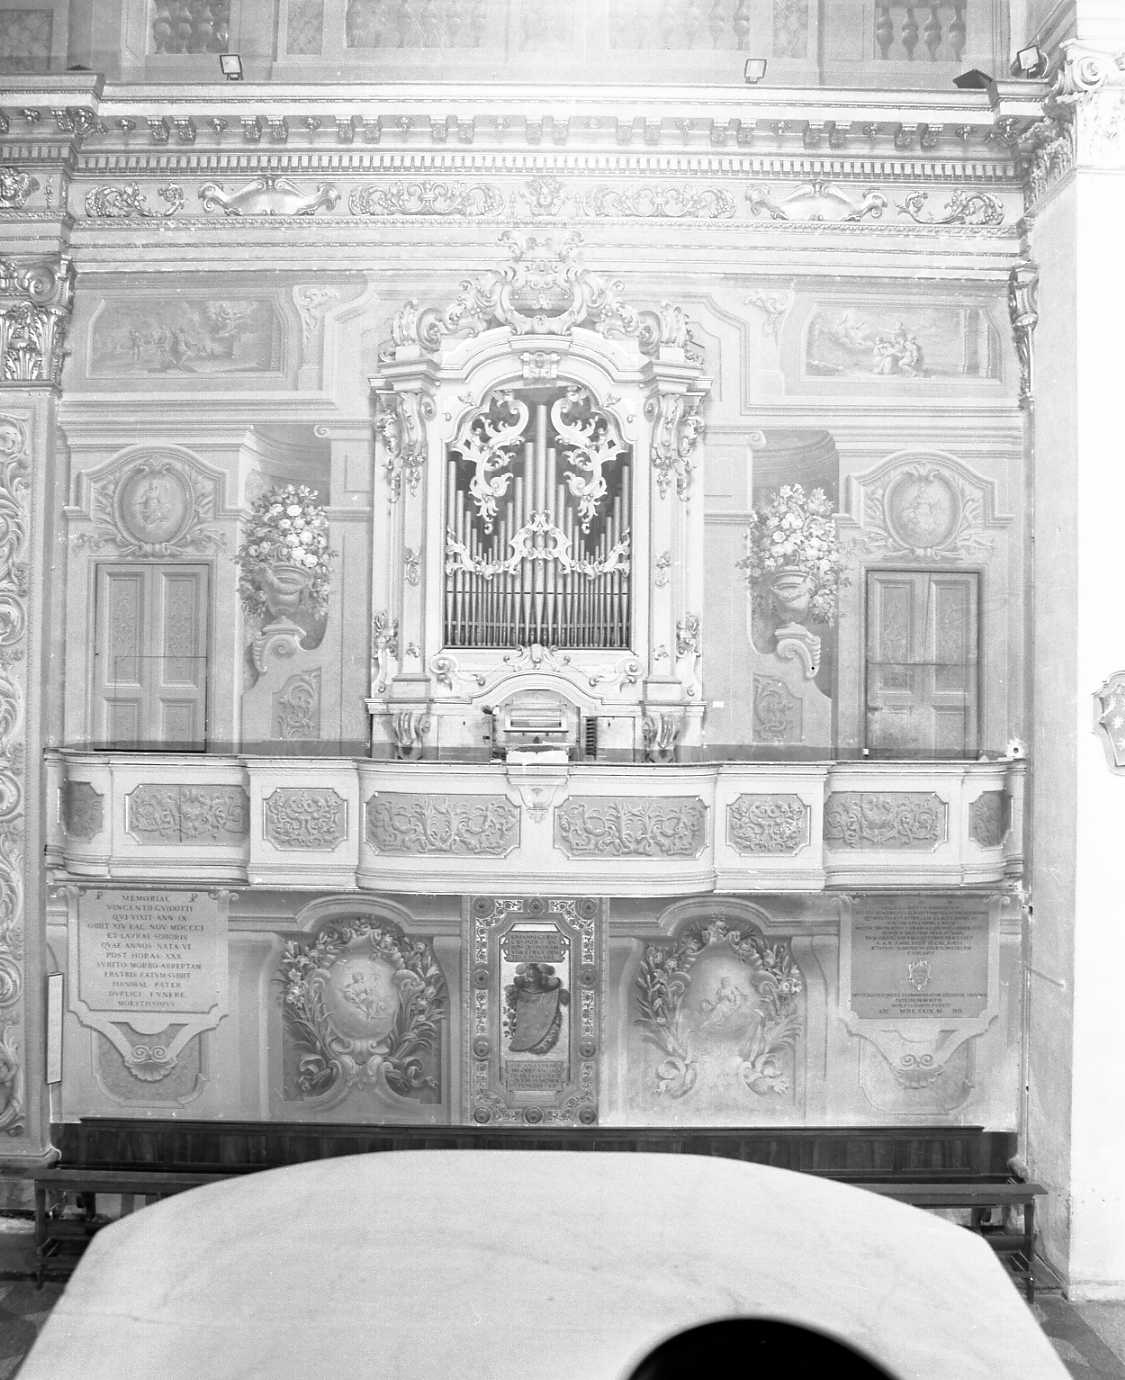 Motivi decorativi vegetali con vasi e festoni; finte architetture; allegorie (decorazione pittorica) di Orsoni Giuseppe (sec. XVIII)